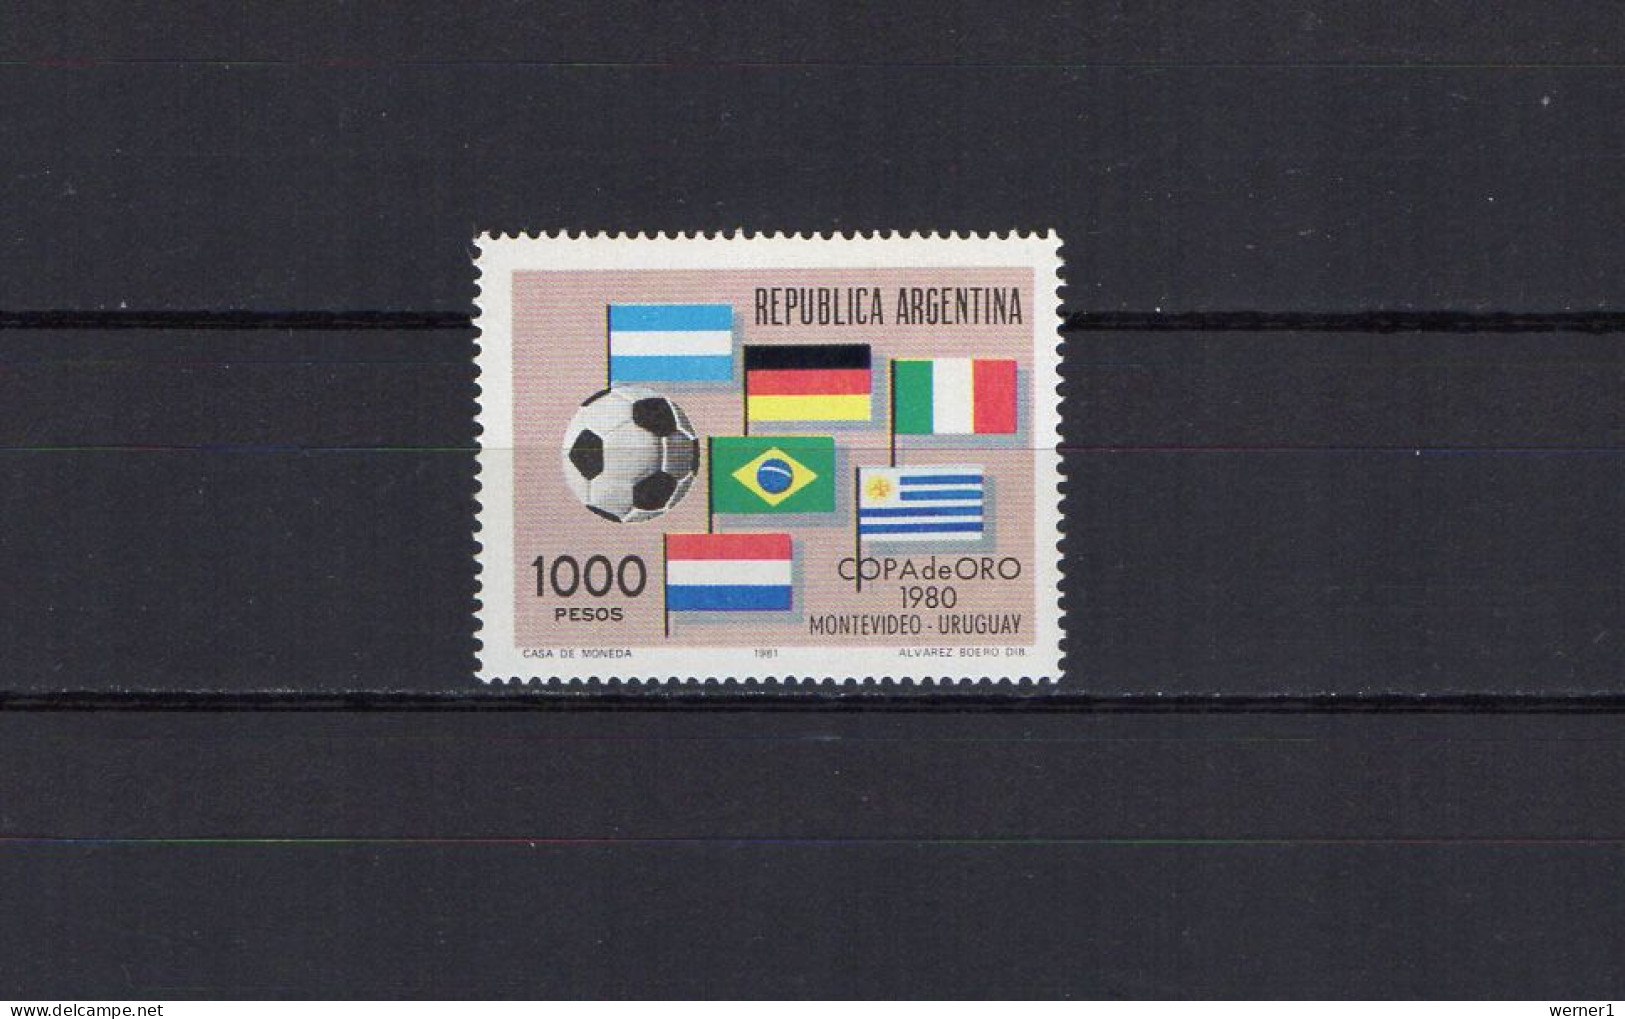 Argentina 1981 Football Soccer Gold Cup Stamp MNH - Fußball-Amerikameisterschaft